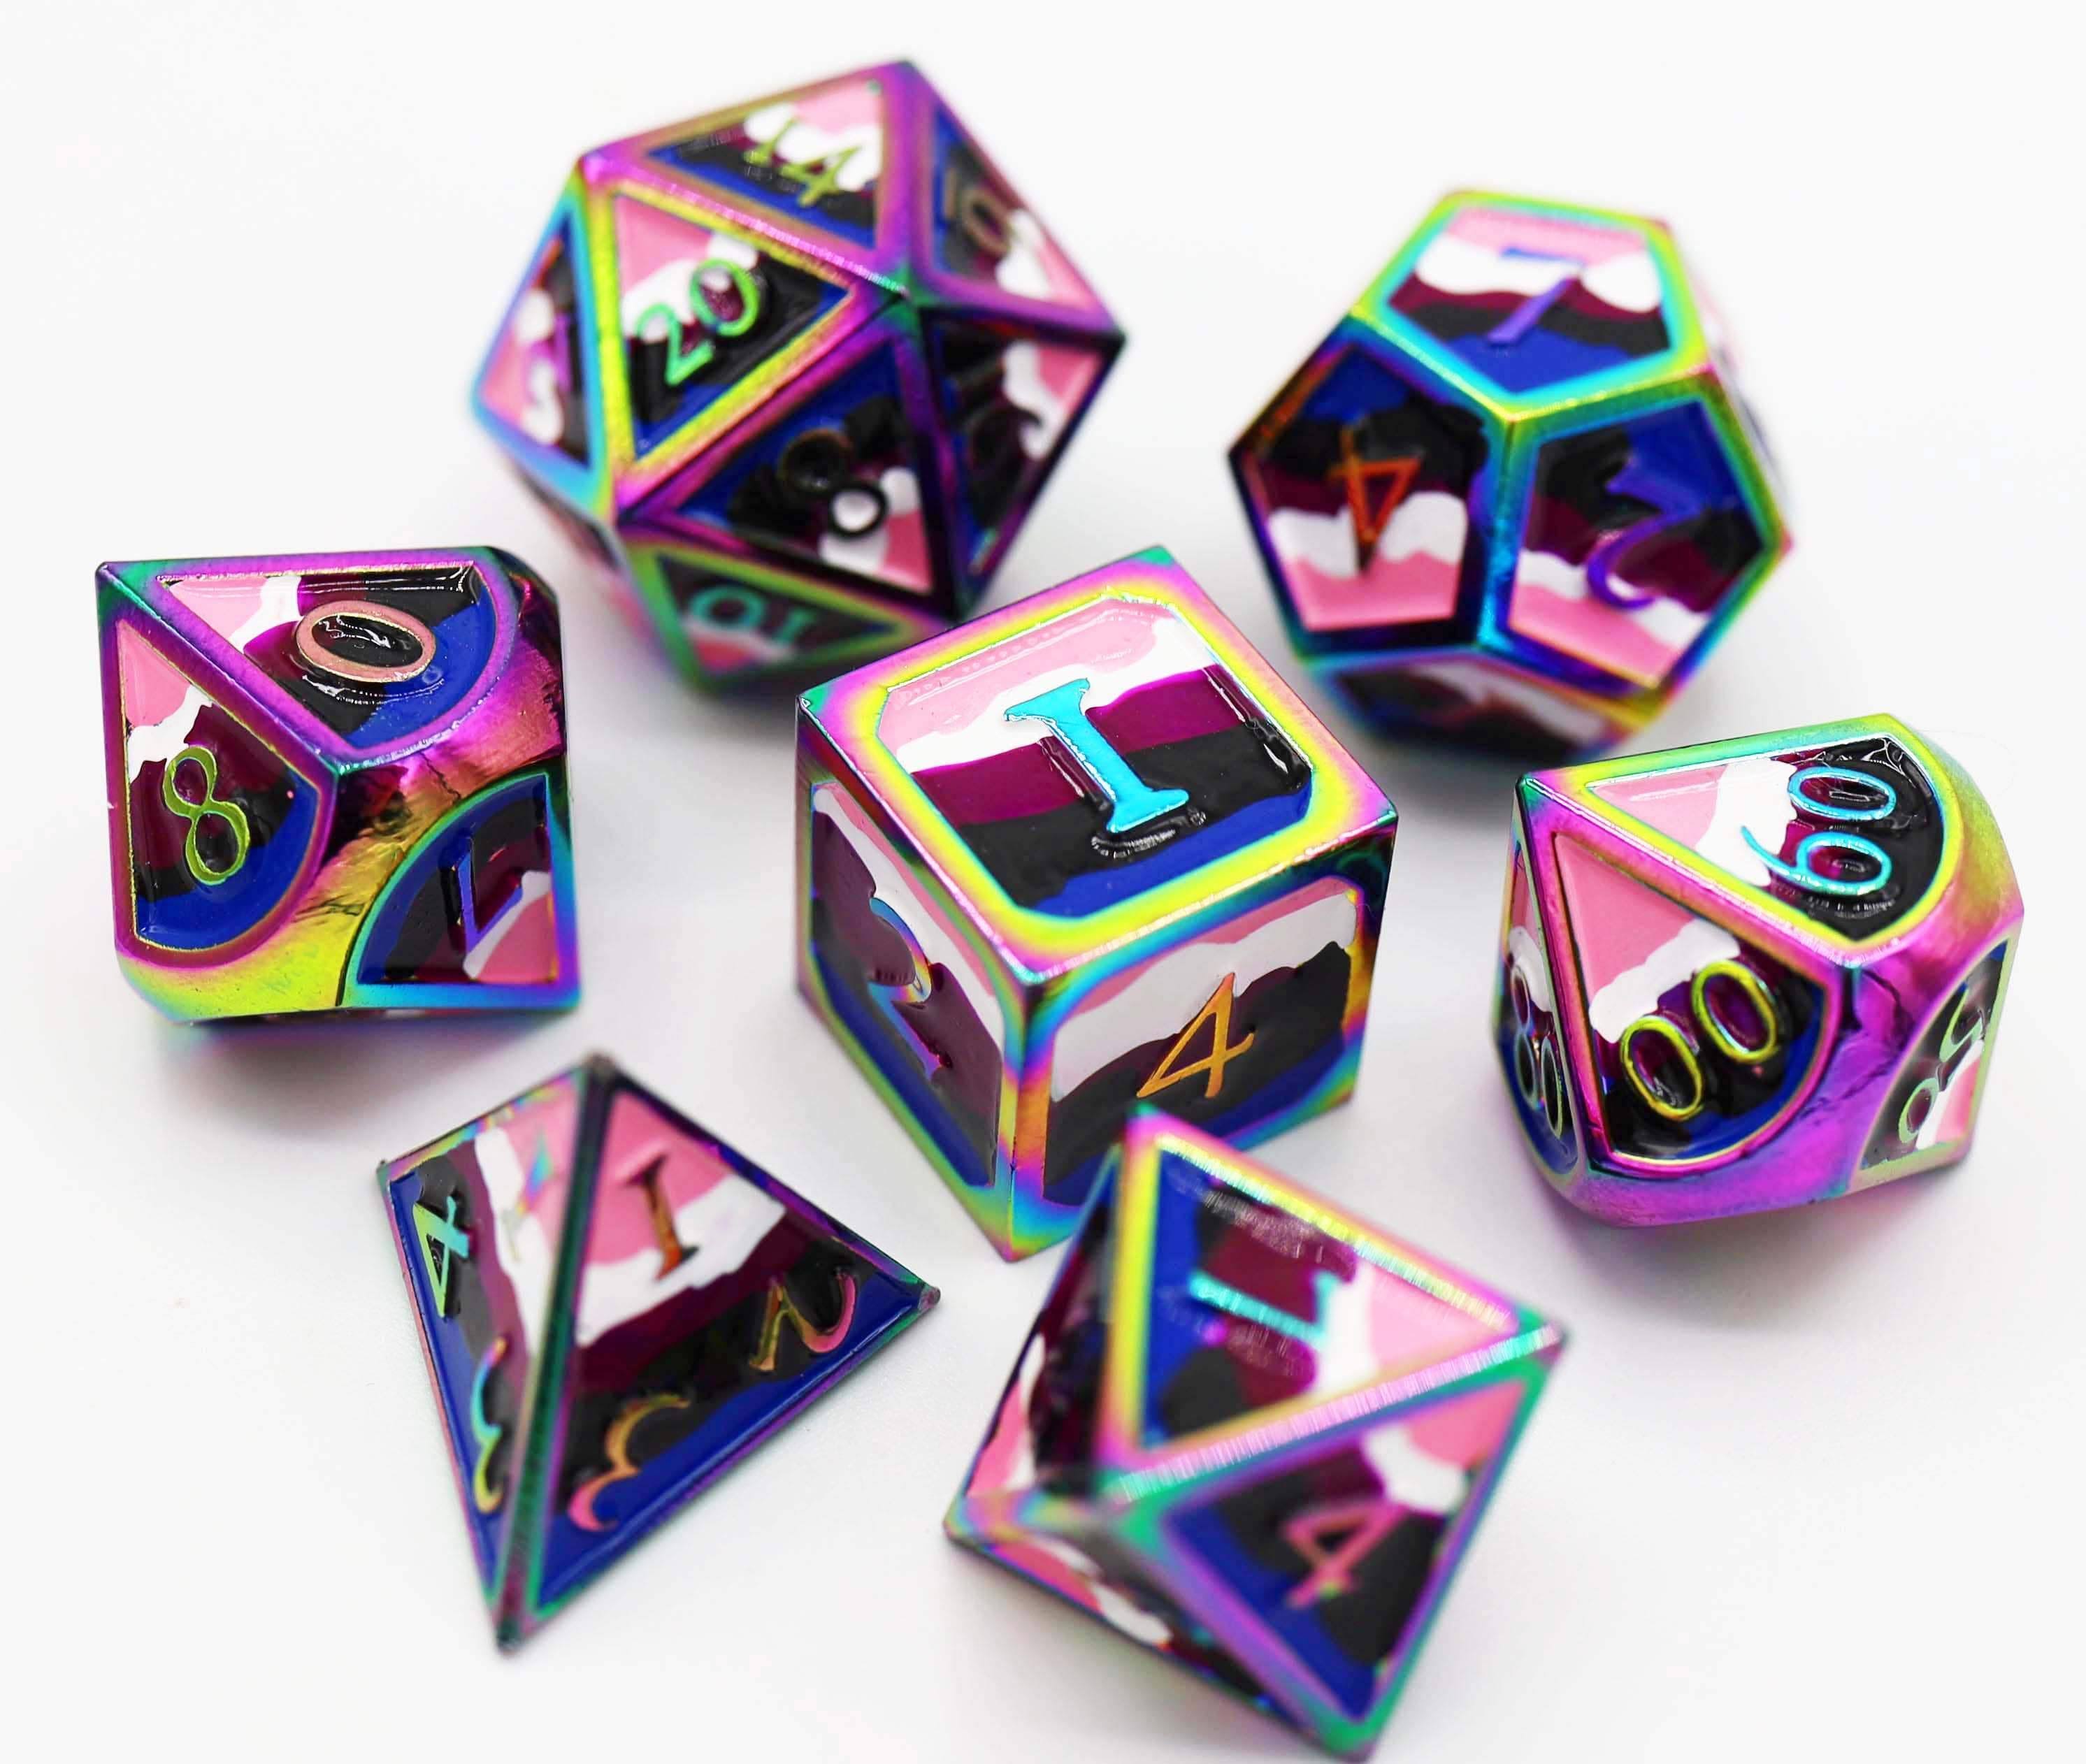 Foam Brain Games Dice Metal Poly Set - Gender Fluid Pride (7) New